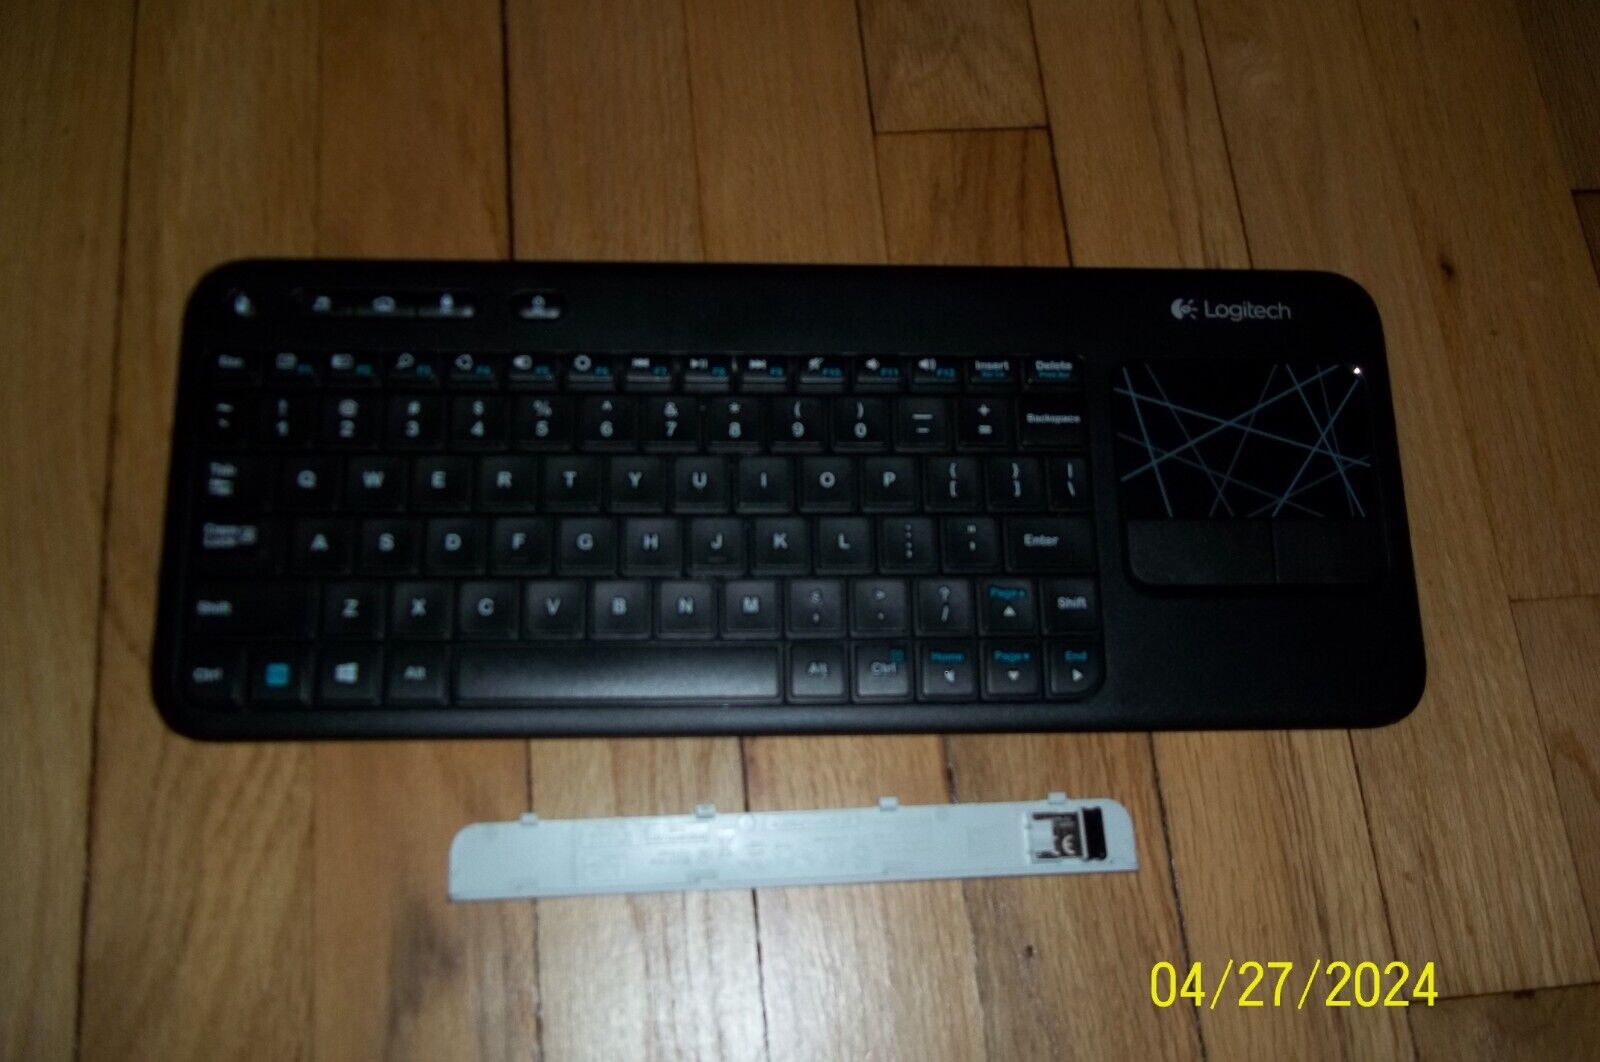 Logitech K400 (920-003070) Wireless Keyboard Tested Works